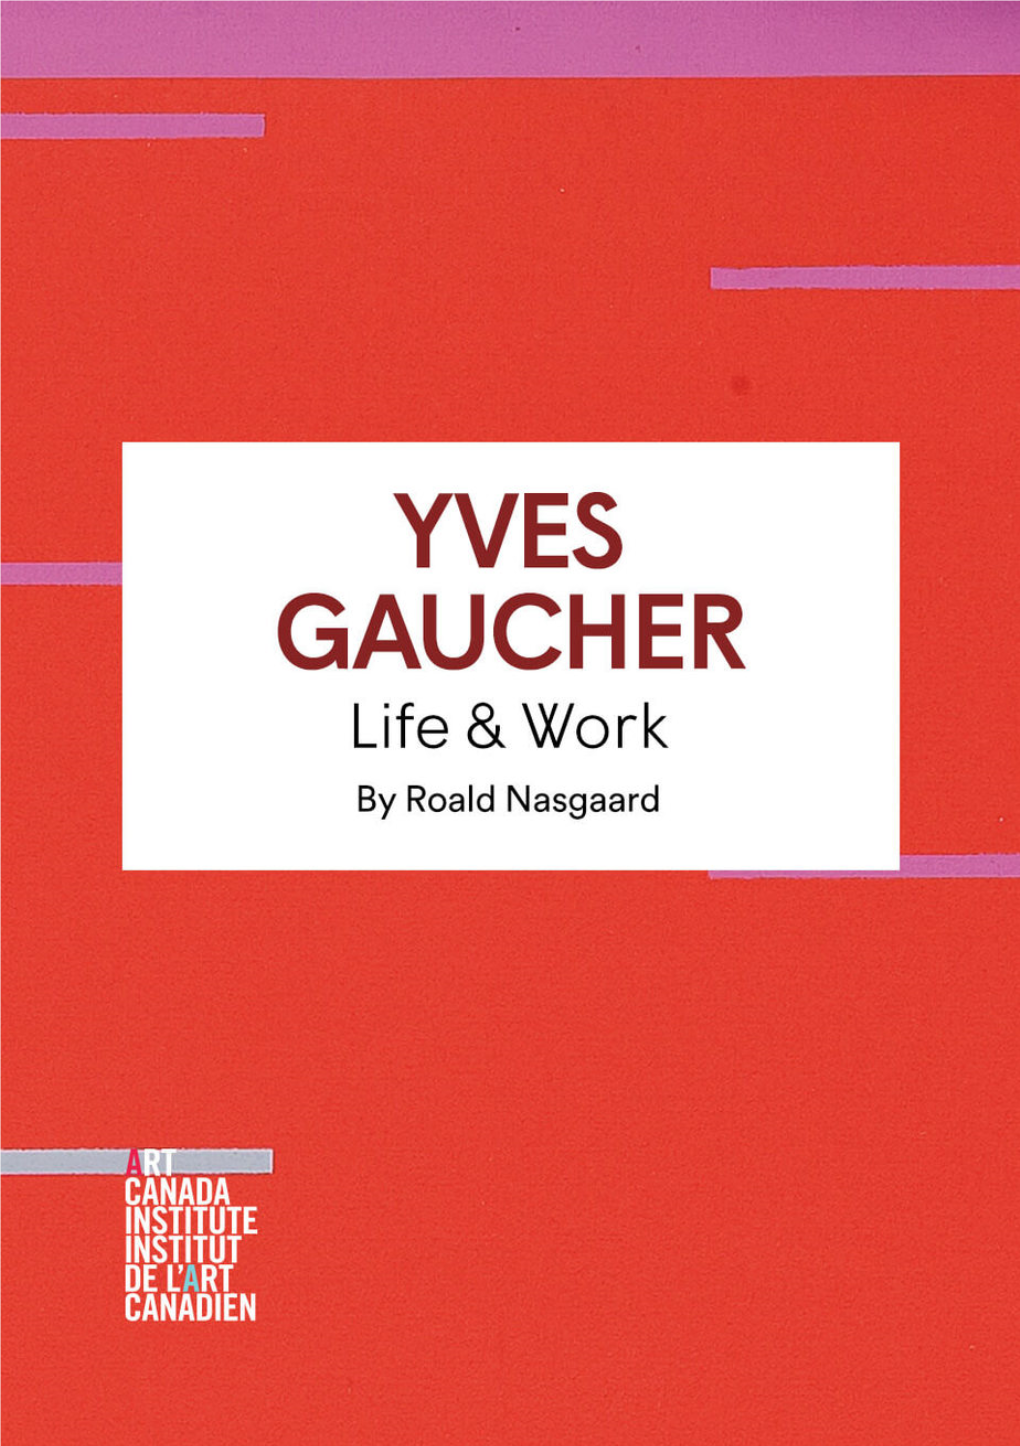 YVES GAUCHER Life & Work by Roald Nasgaard